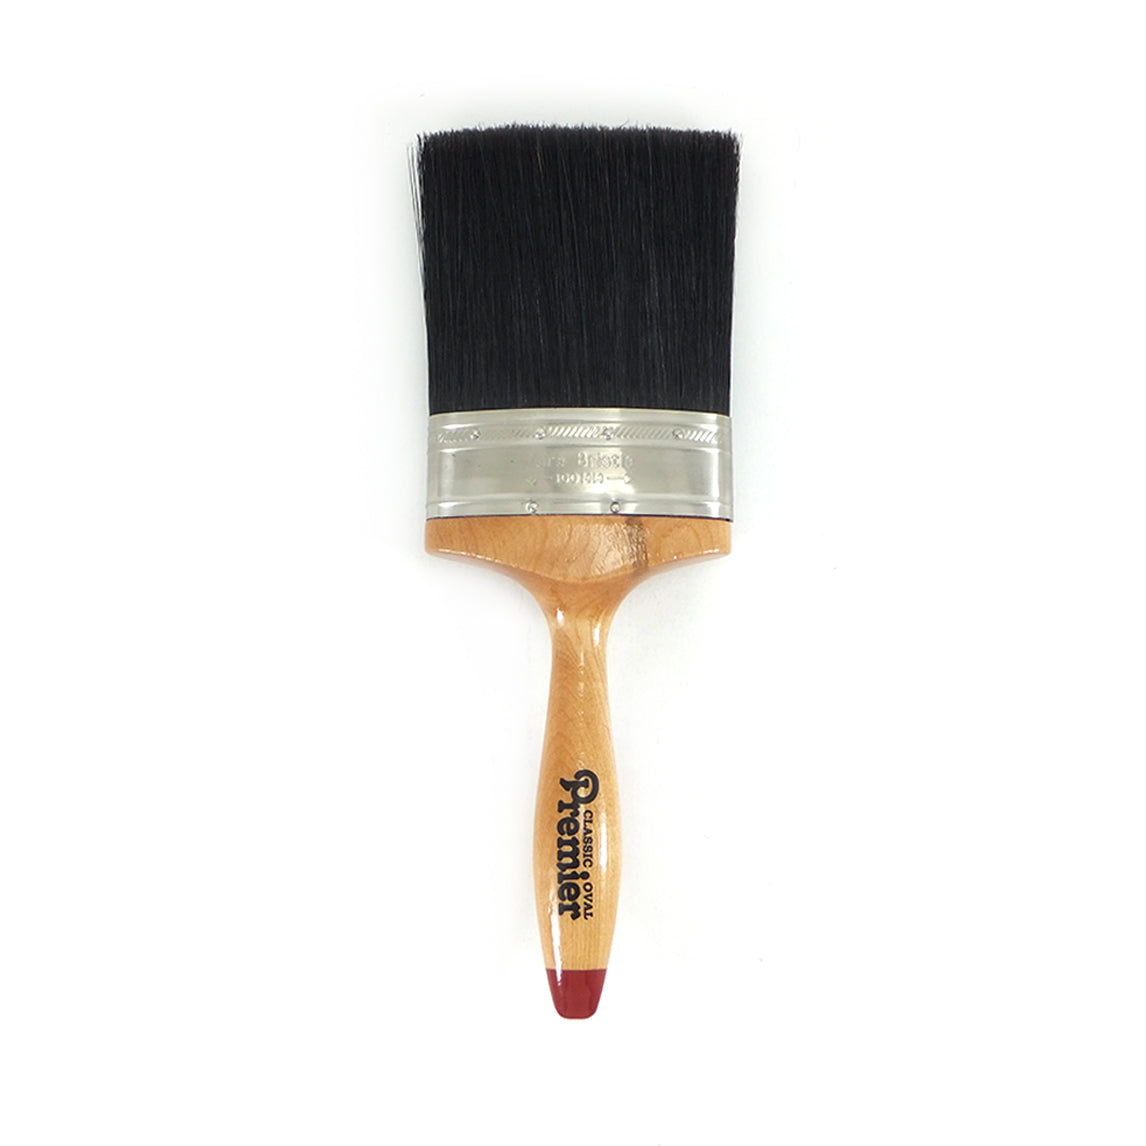 Classic Premier Oval Paint Brush